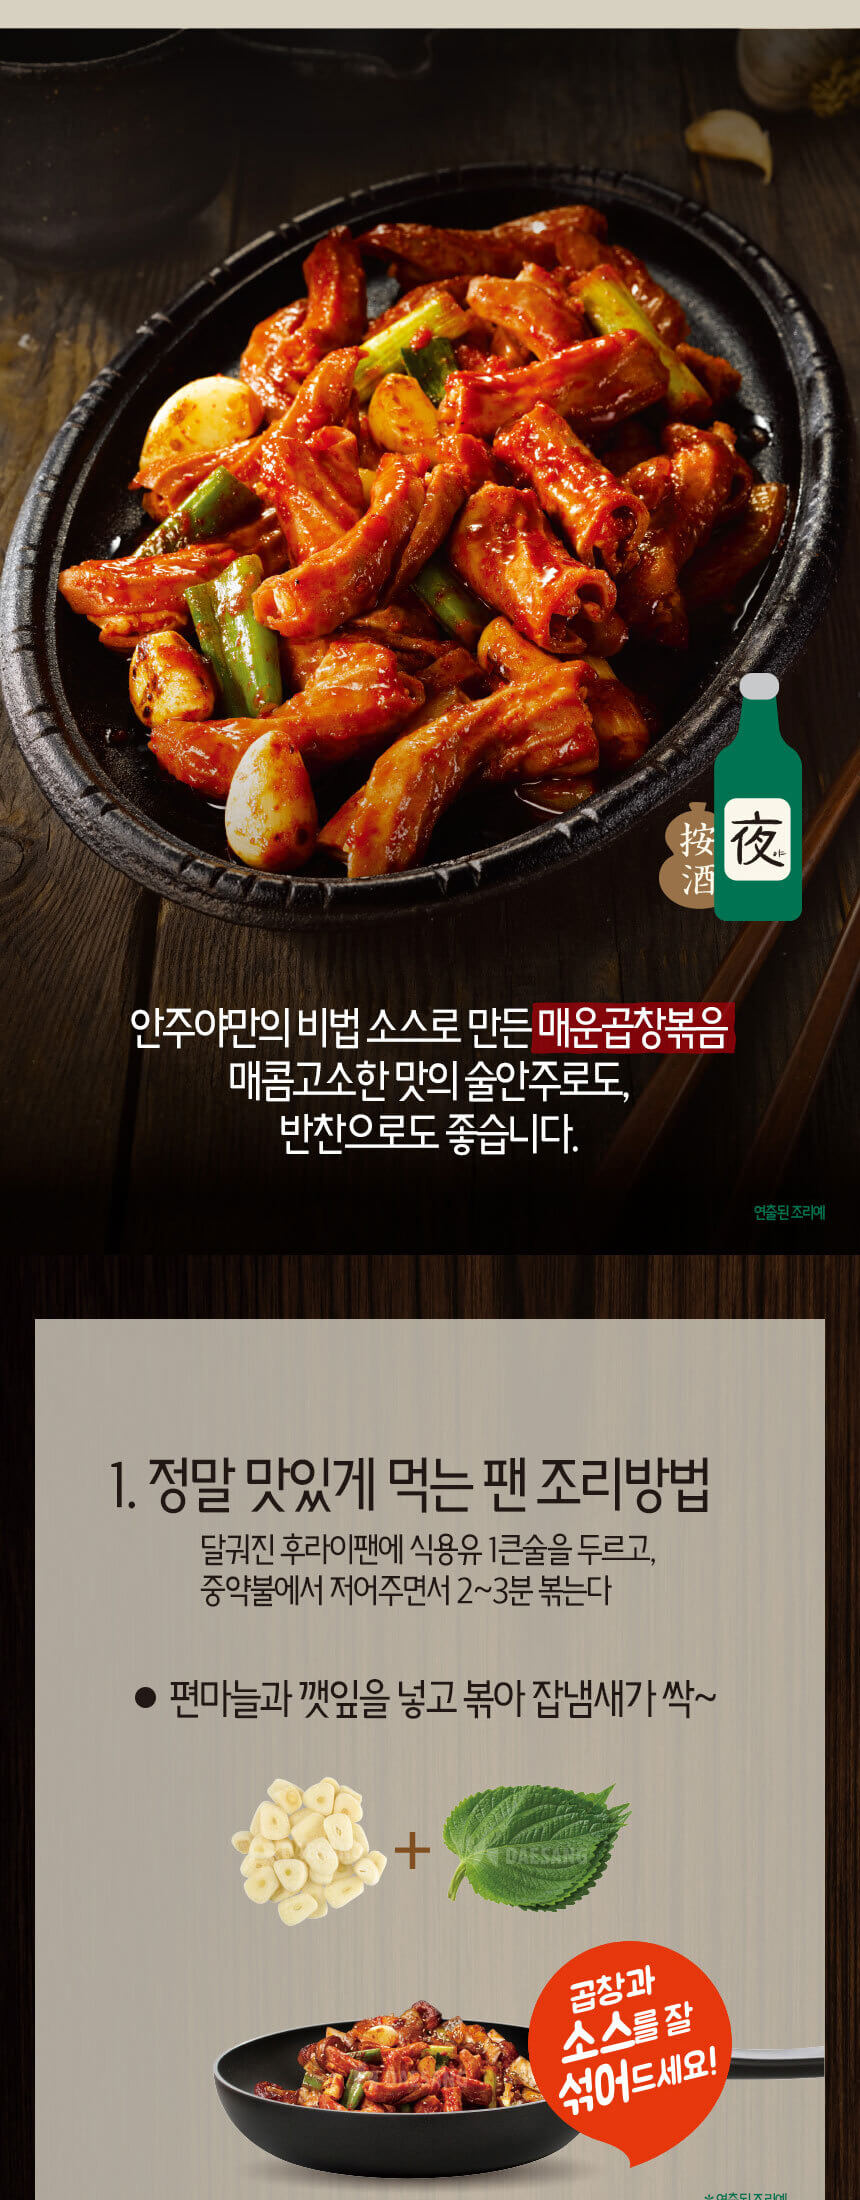 韓國食品-Chung Jung One - Spicy Stir Fried Pork Tripe 160g